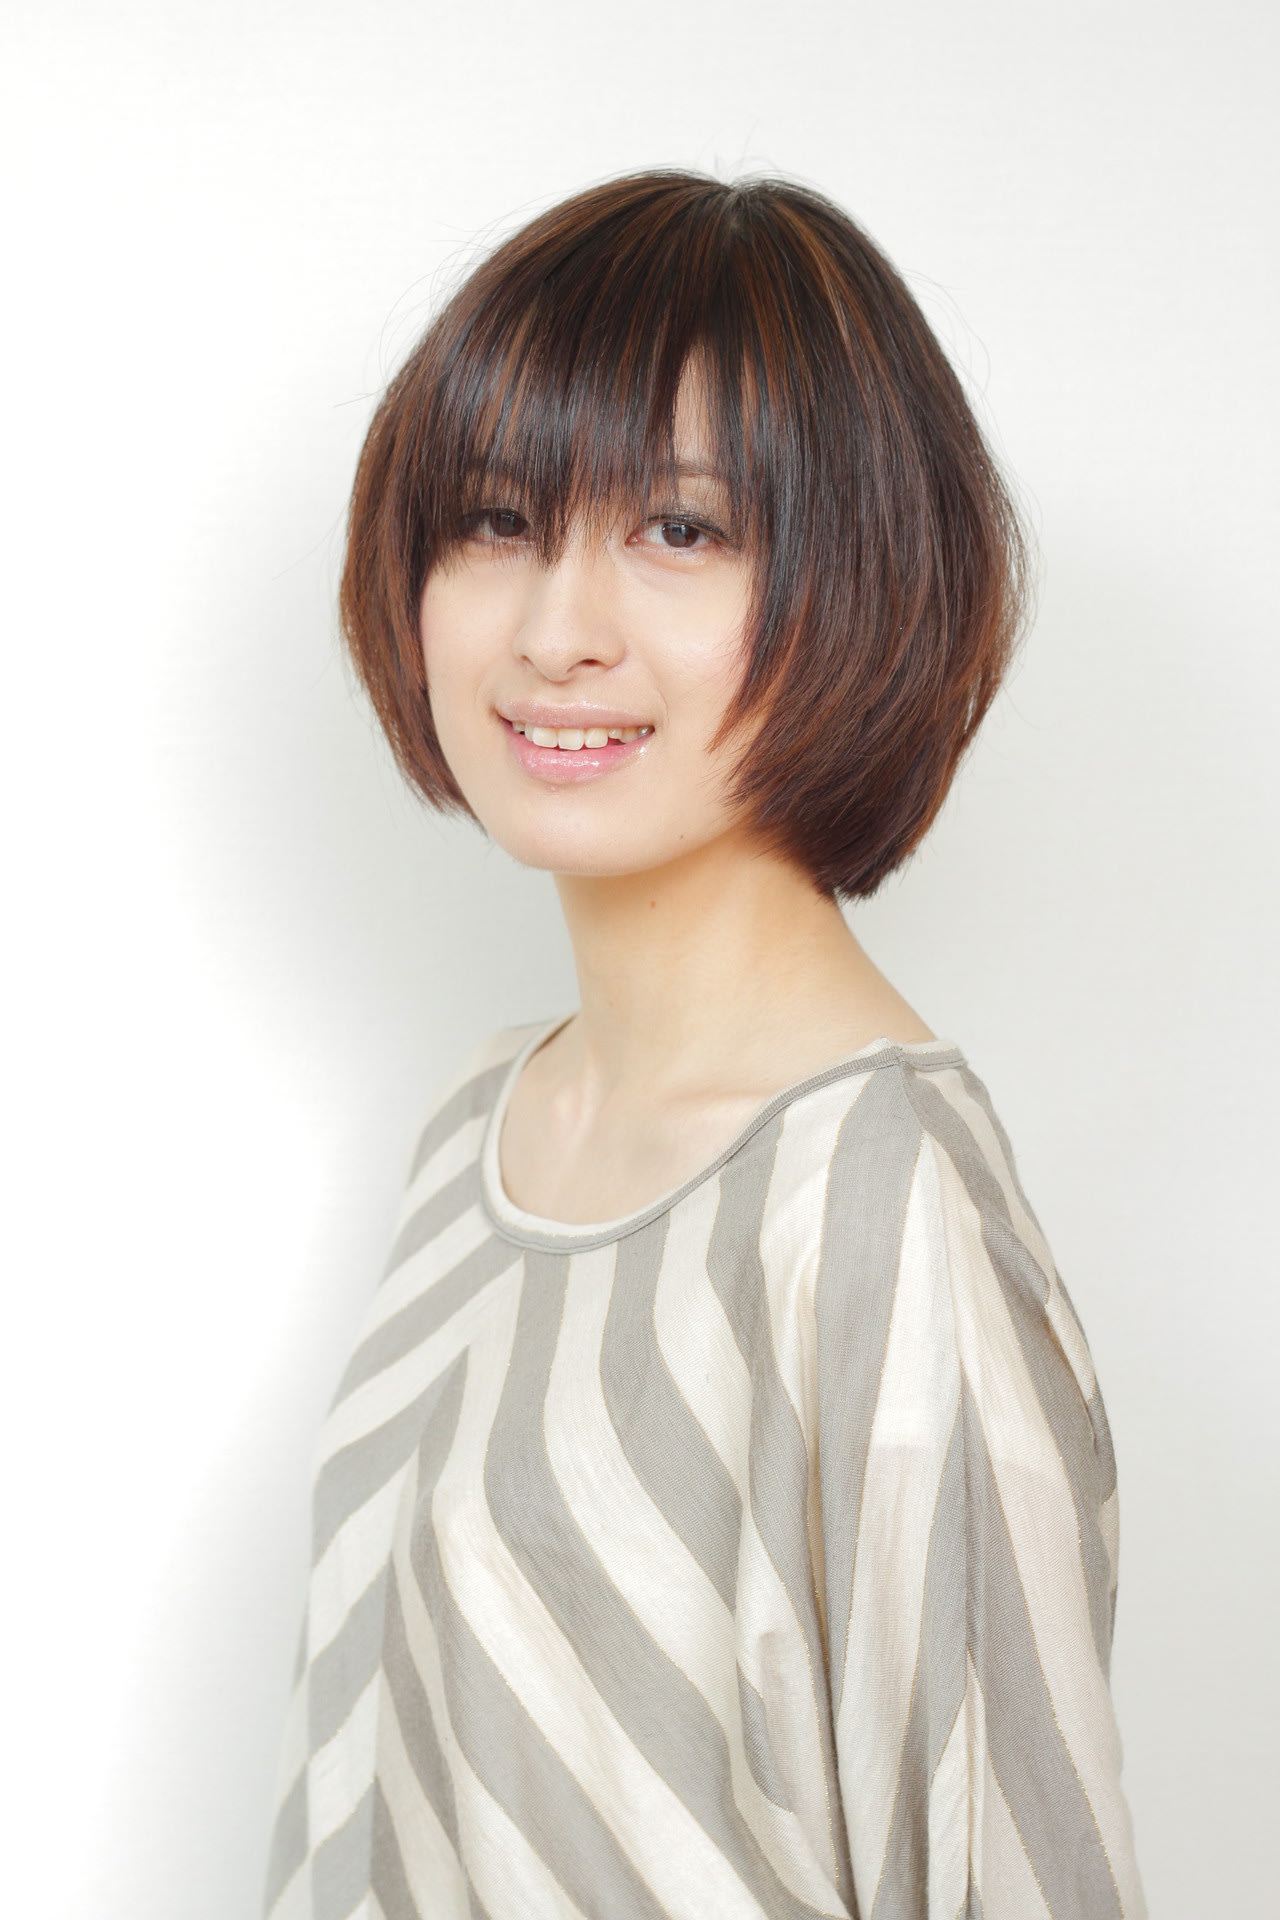 ボブ☆ 下北沢 美容室 エストレーラ 女性スタッフ・女性スタイリストのみの美容室 ブログ